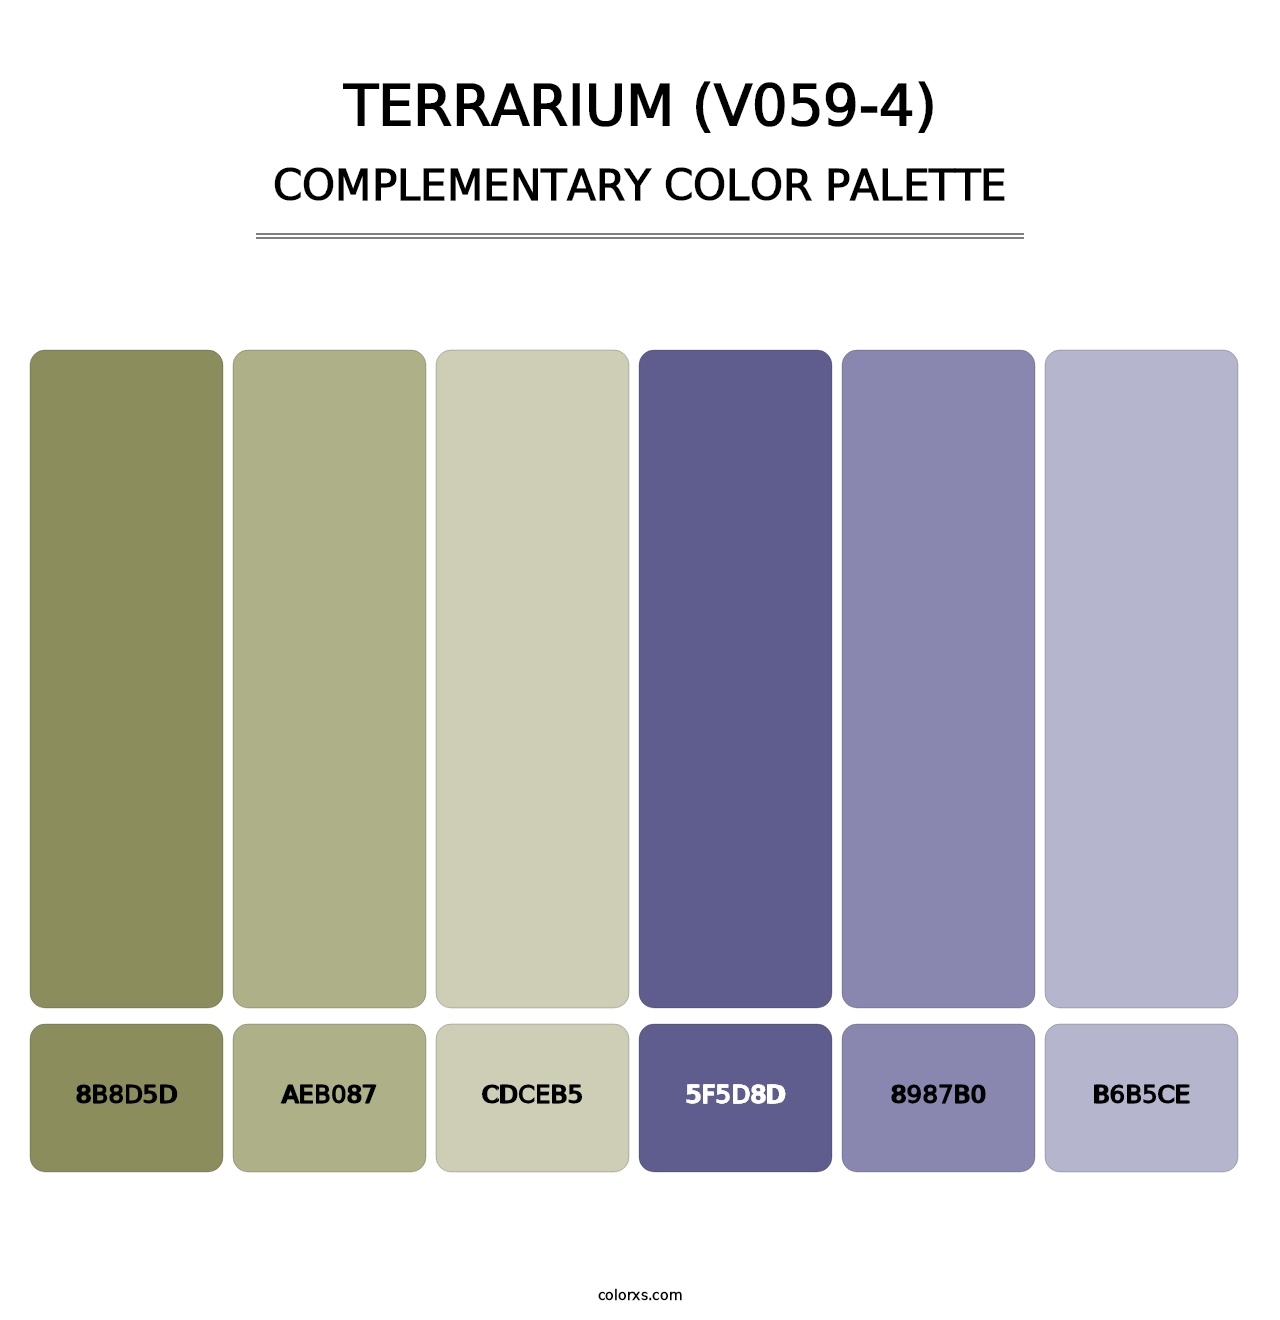 Terrarium (V059-4) - Complementary Color Palette